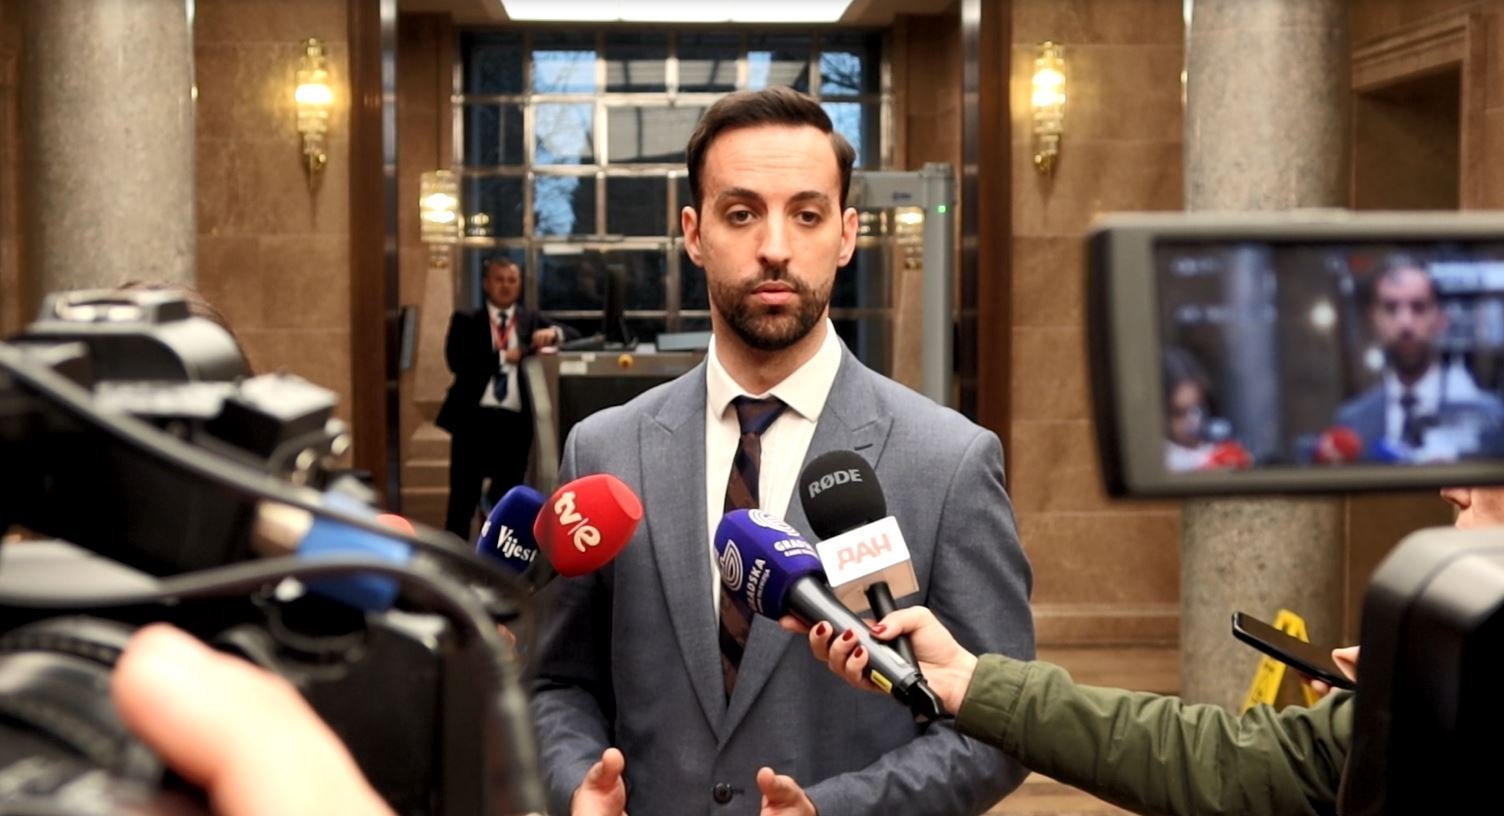 Zirojević: Postoji opcija da SD napusti Odbor za izbornu reformu